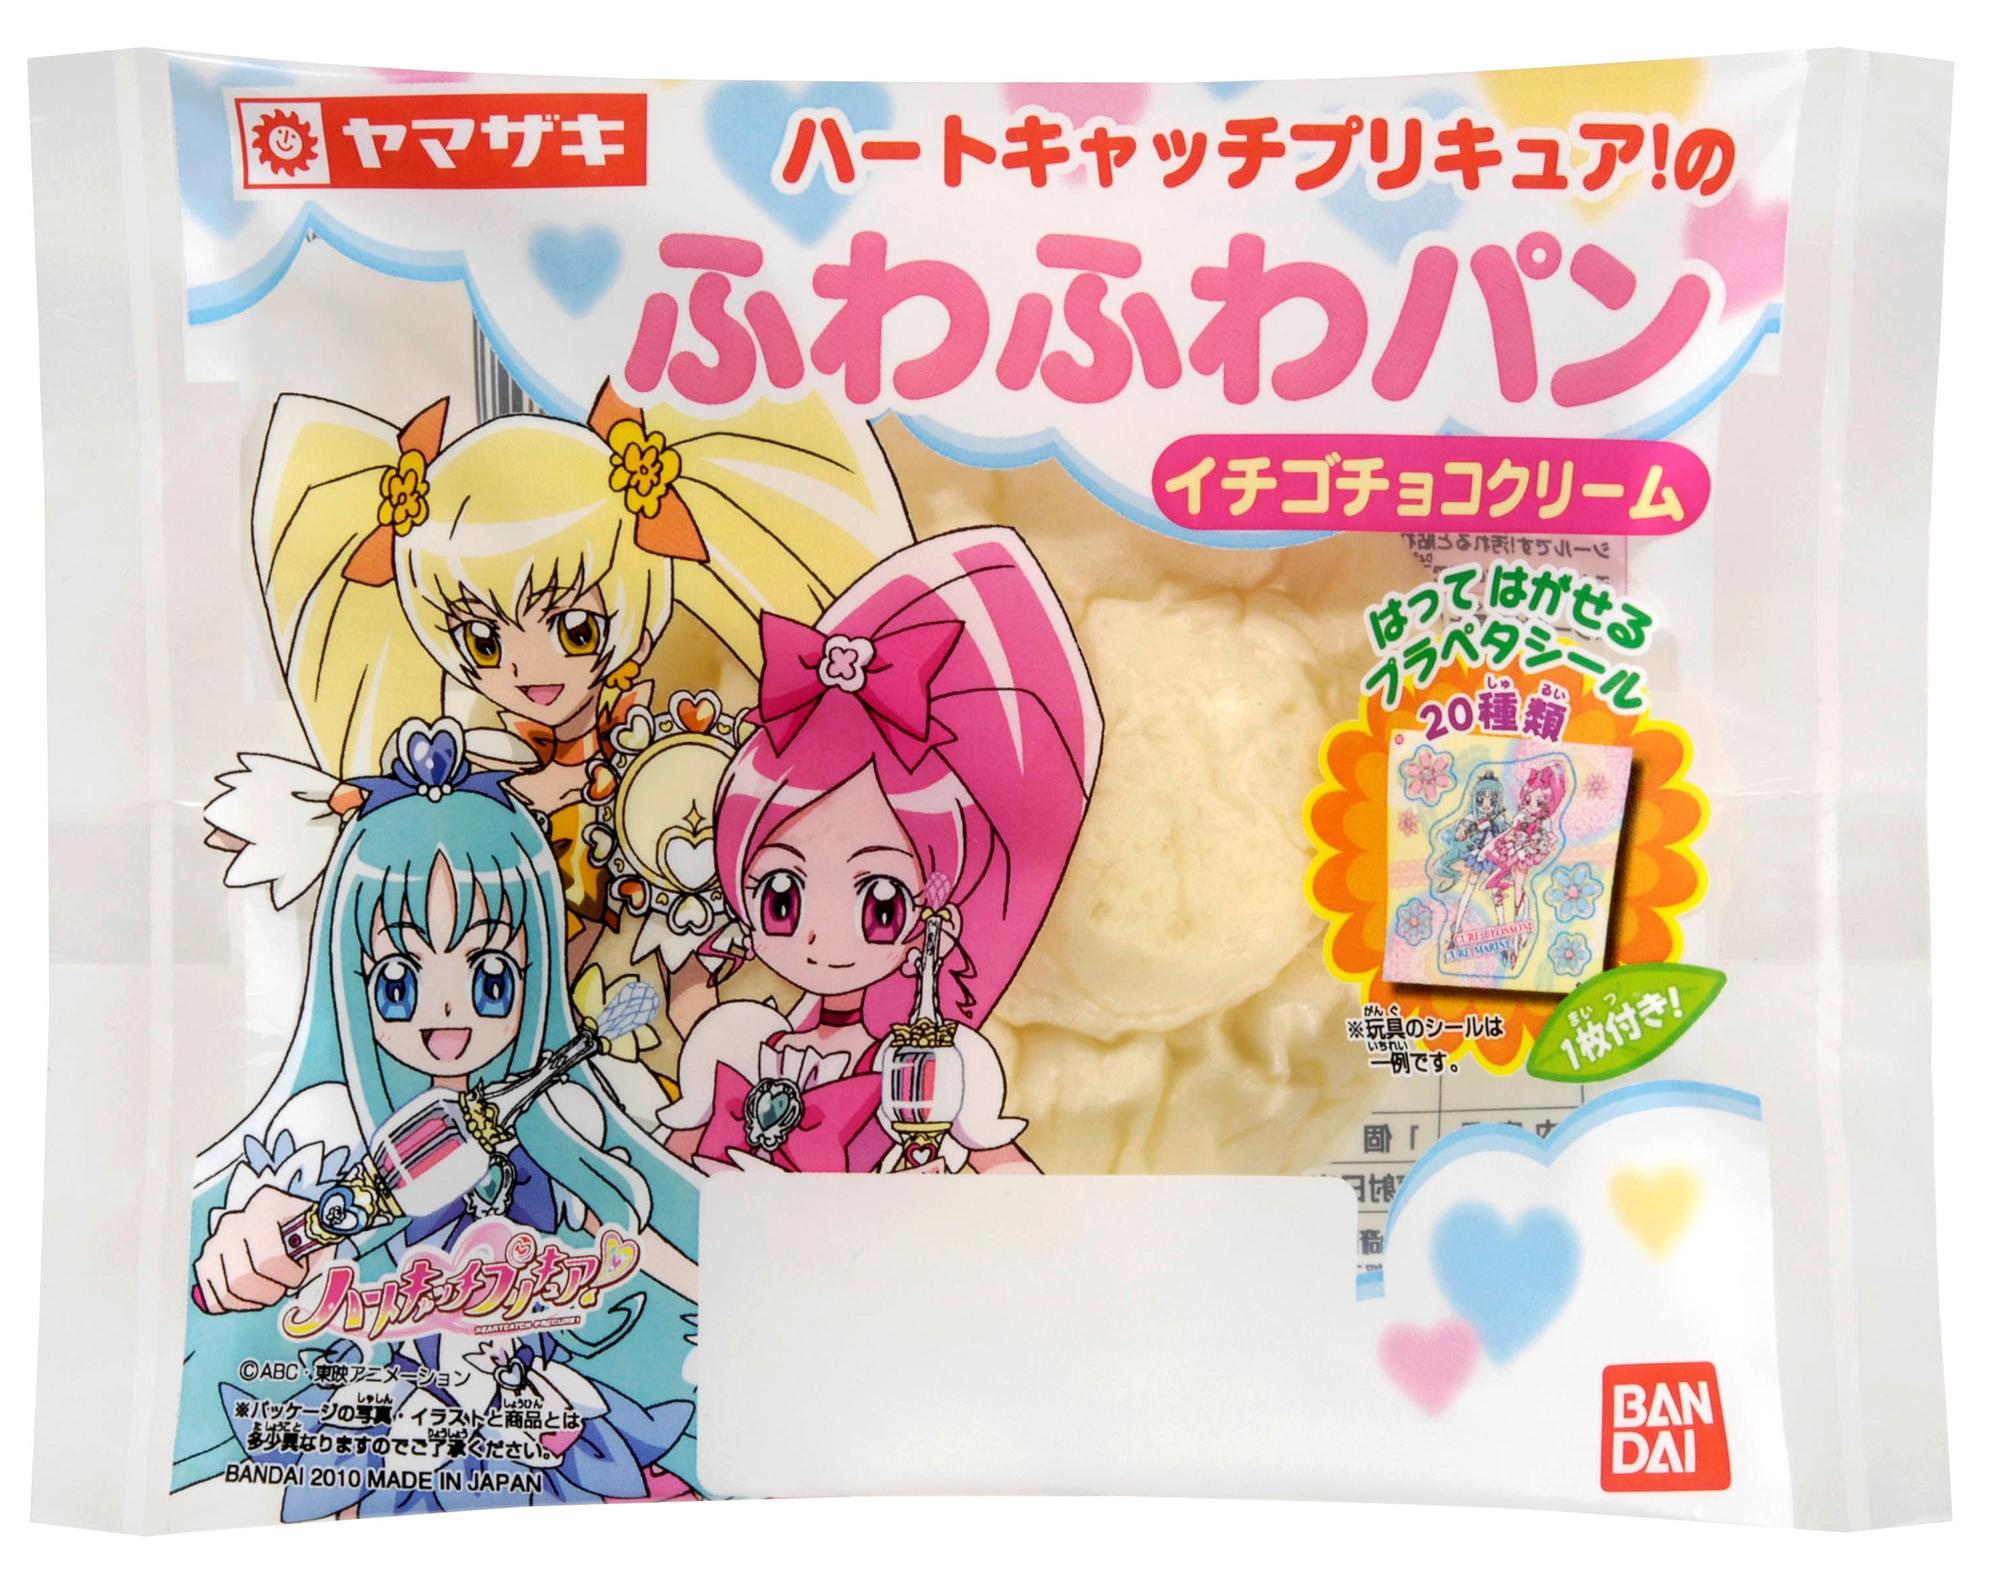 ハートキャッチプリキュア のふわふわパン イチゴクリーム 発売日 10年8月 バンダイ キャンディ公式サイト